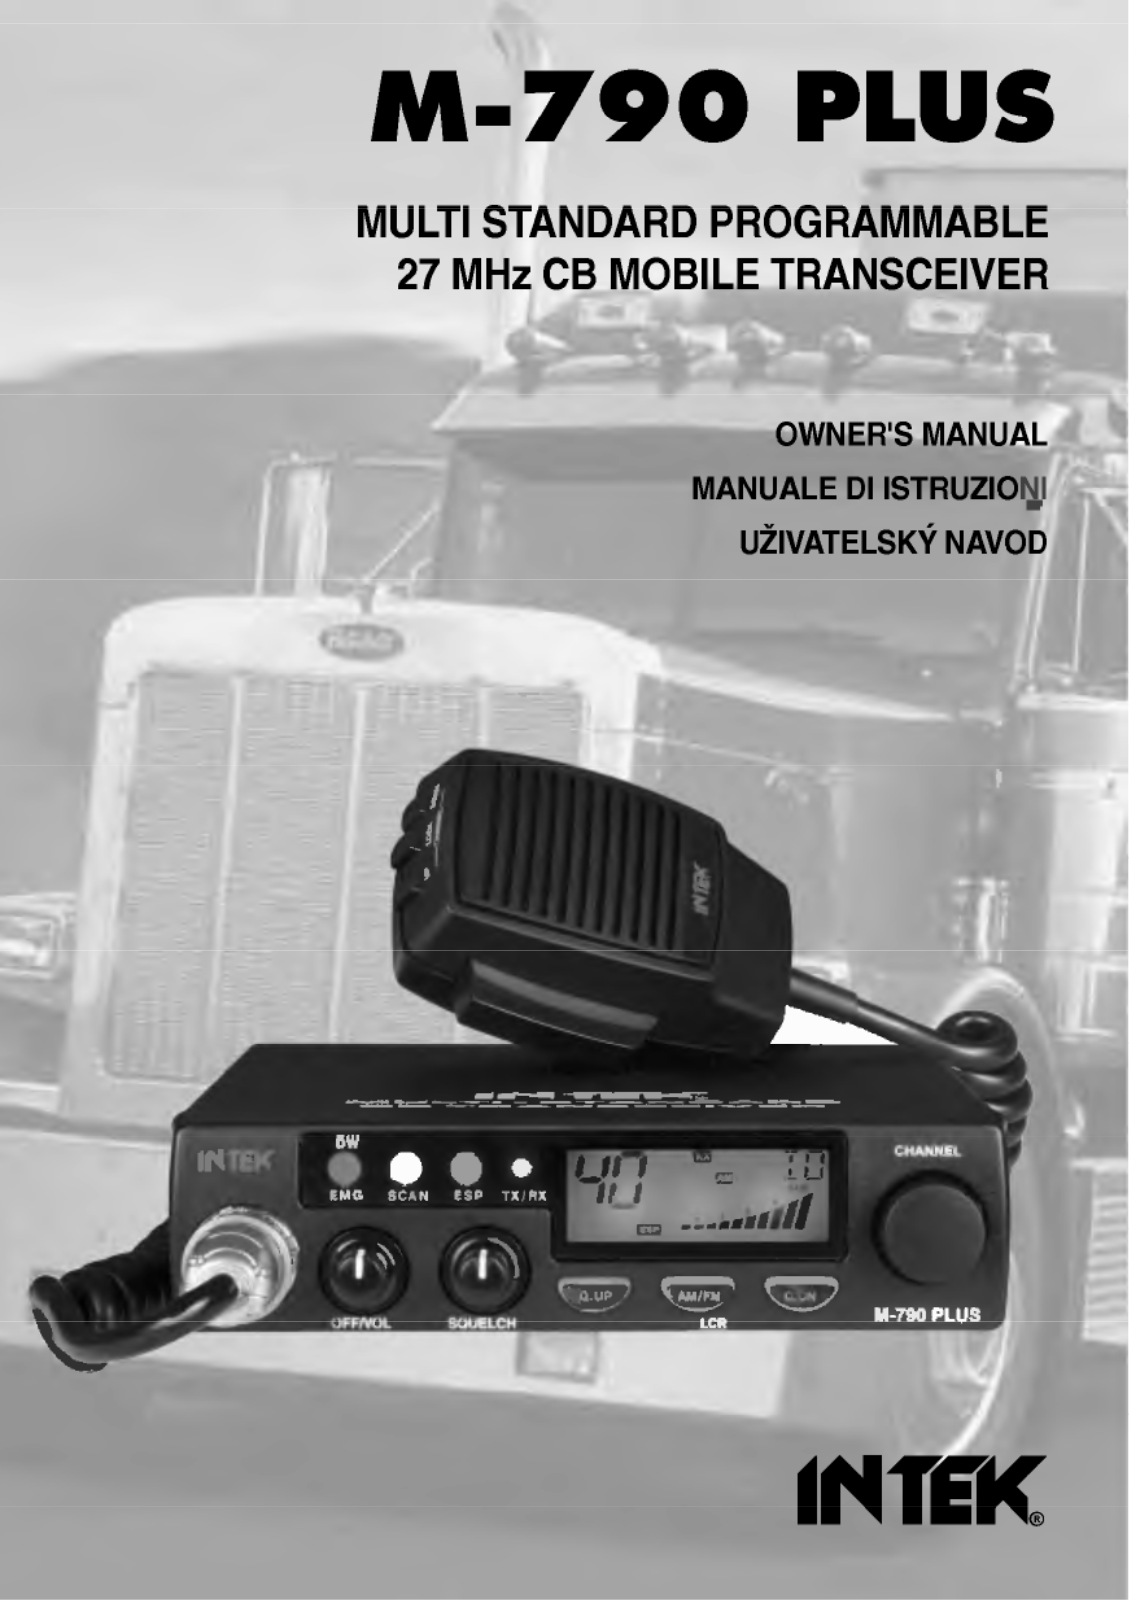 Intek M-790 PLUS User Manual